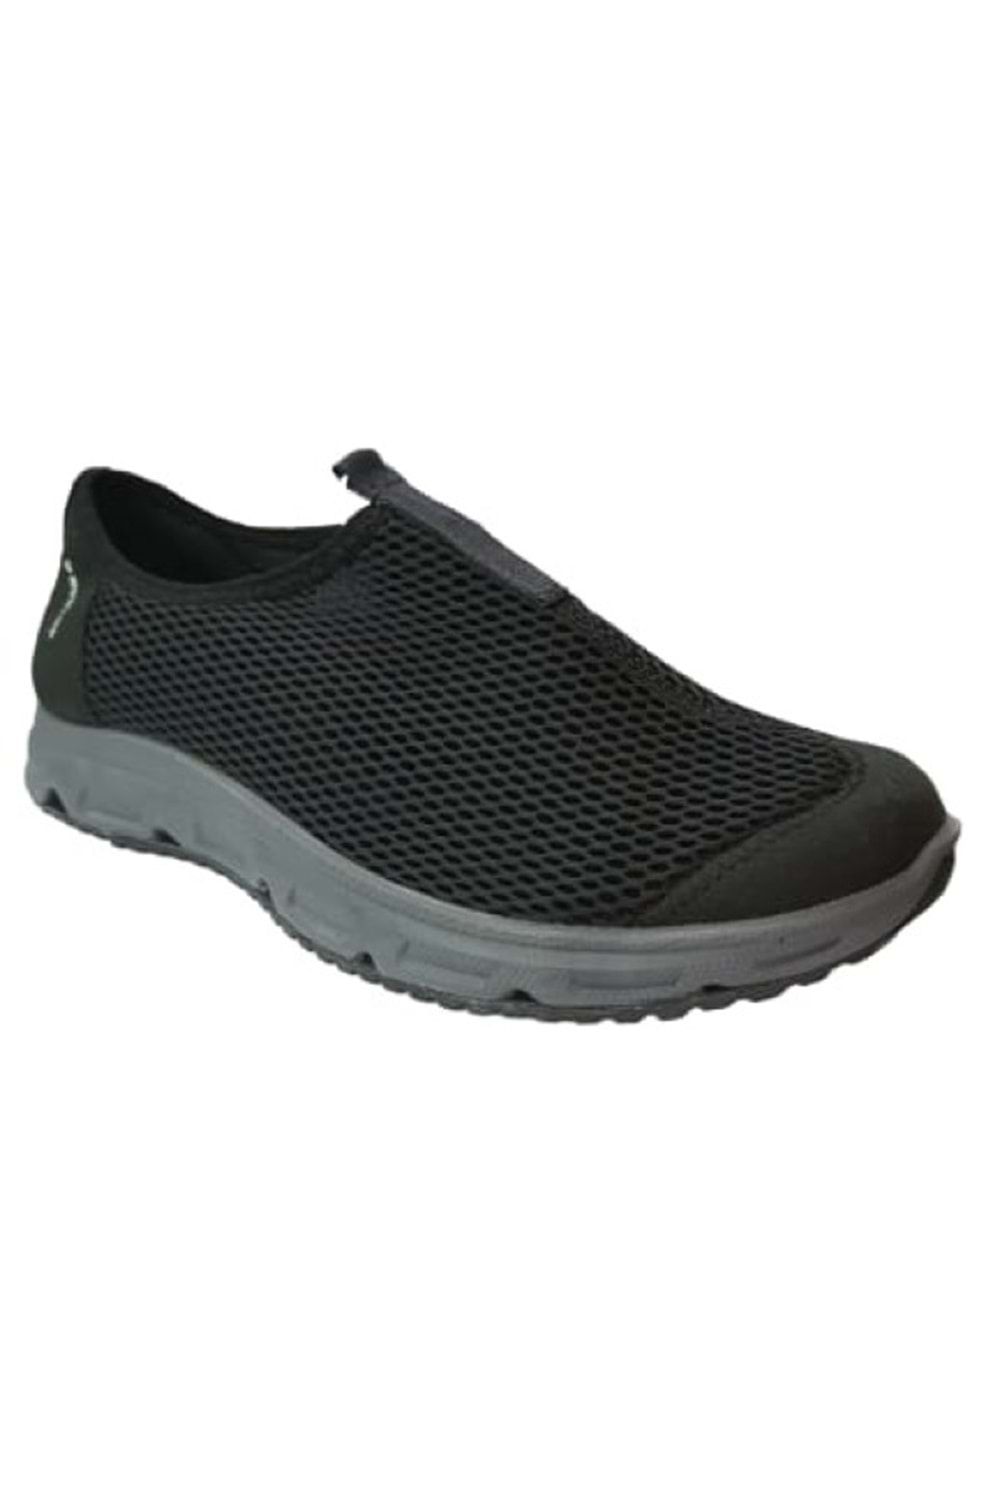 Dunlop Dnp-2360 Erkek Günlük Fileli Spor Ayakkabı - Siyah - ST00227-Siyah-41